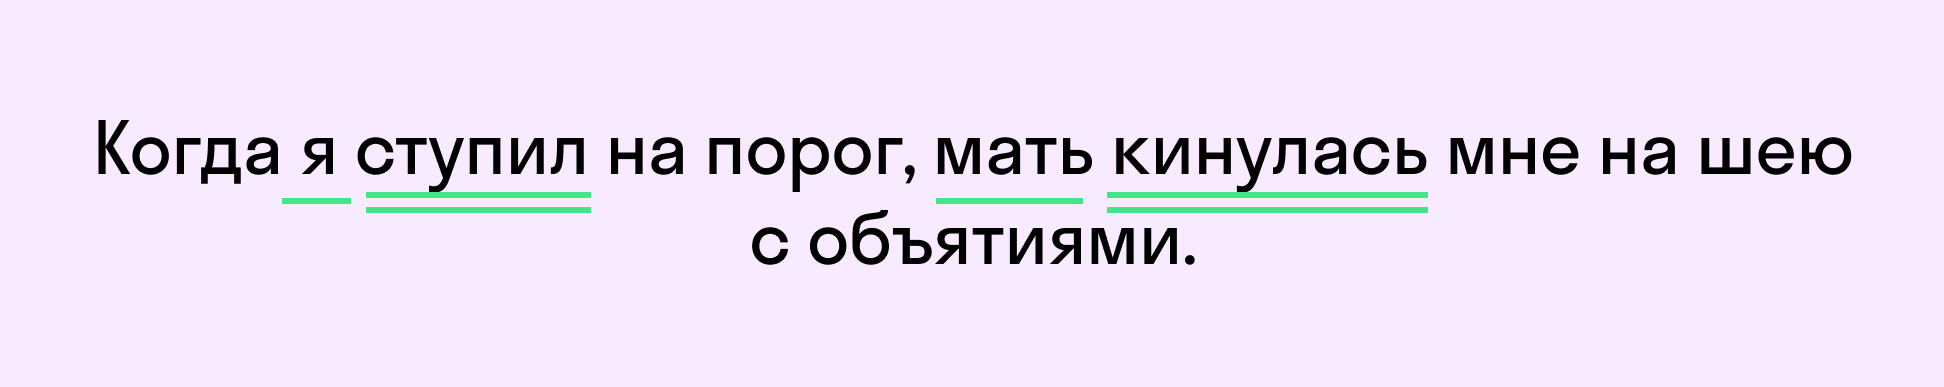 Пример сложного предложения | skysmart.ru